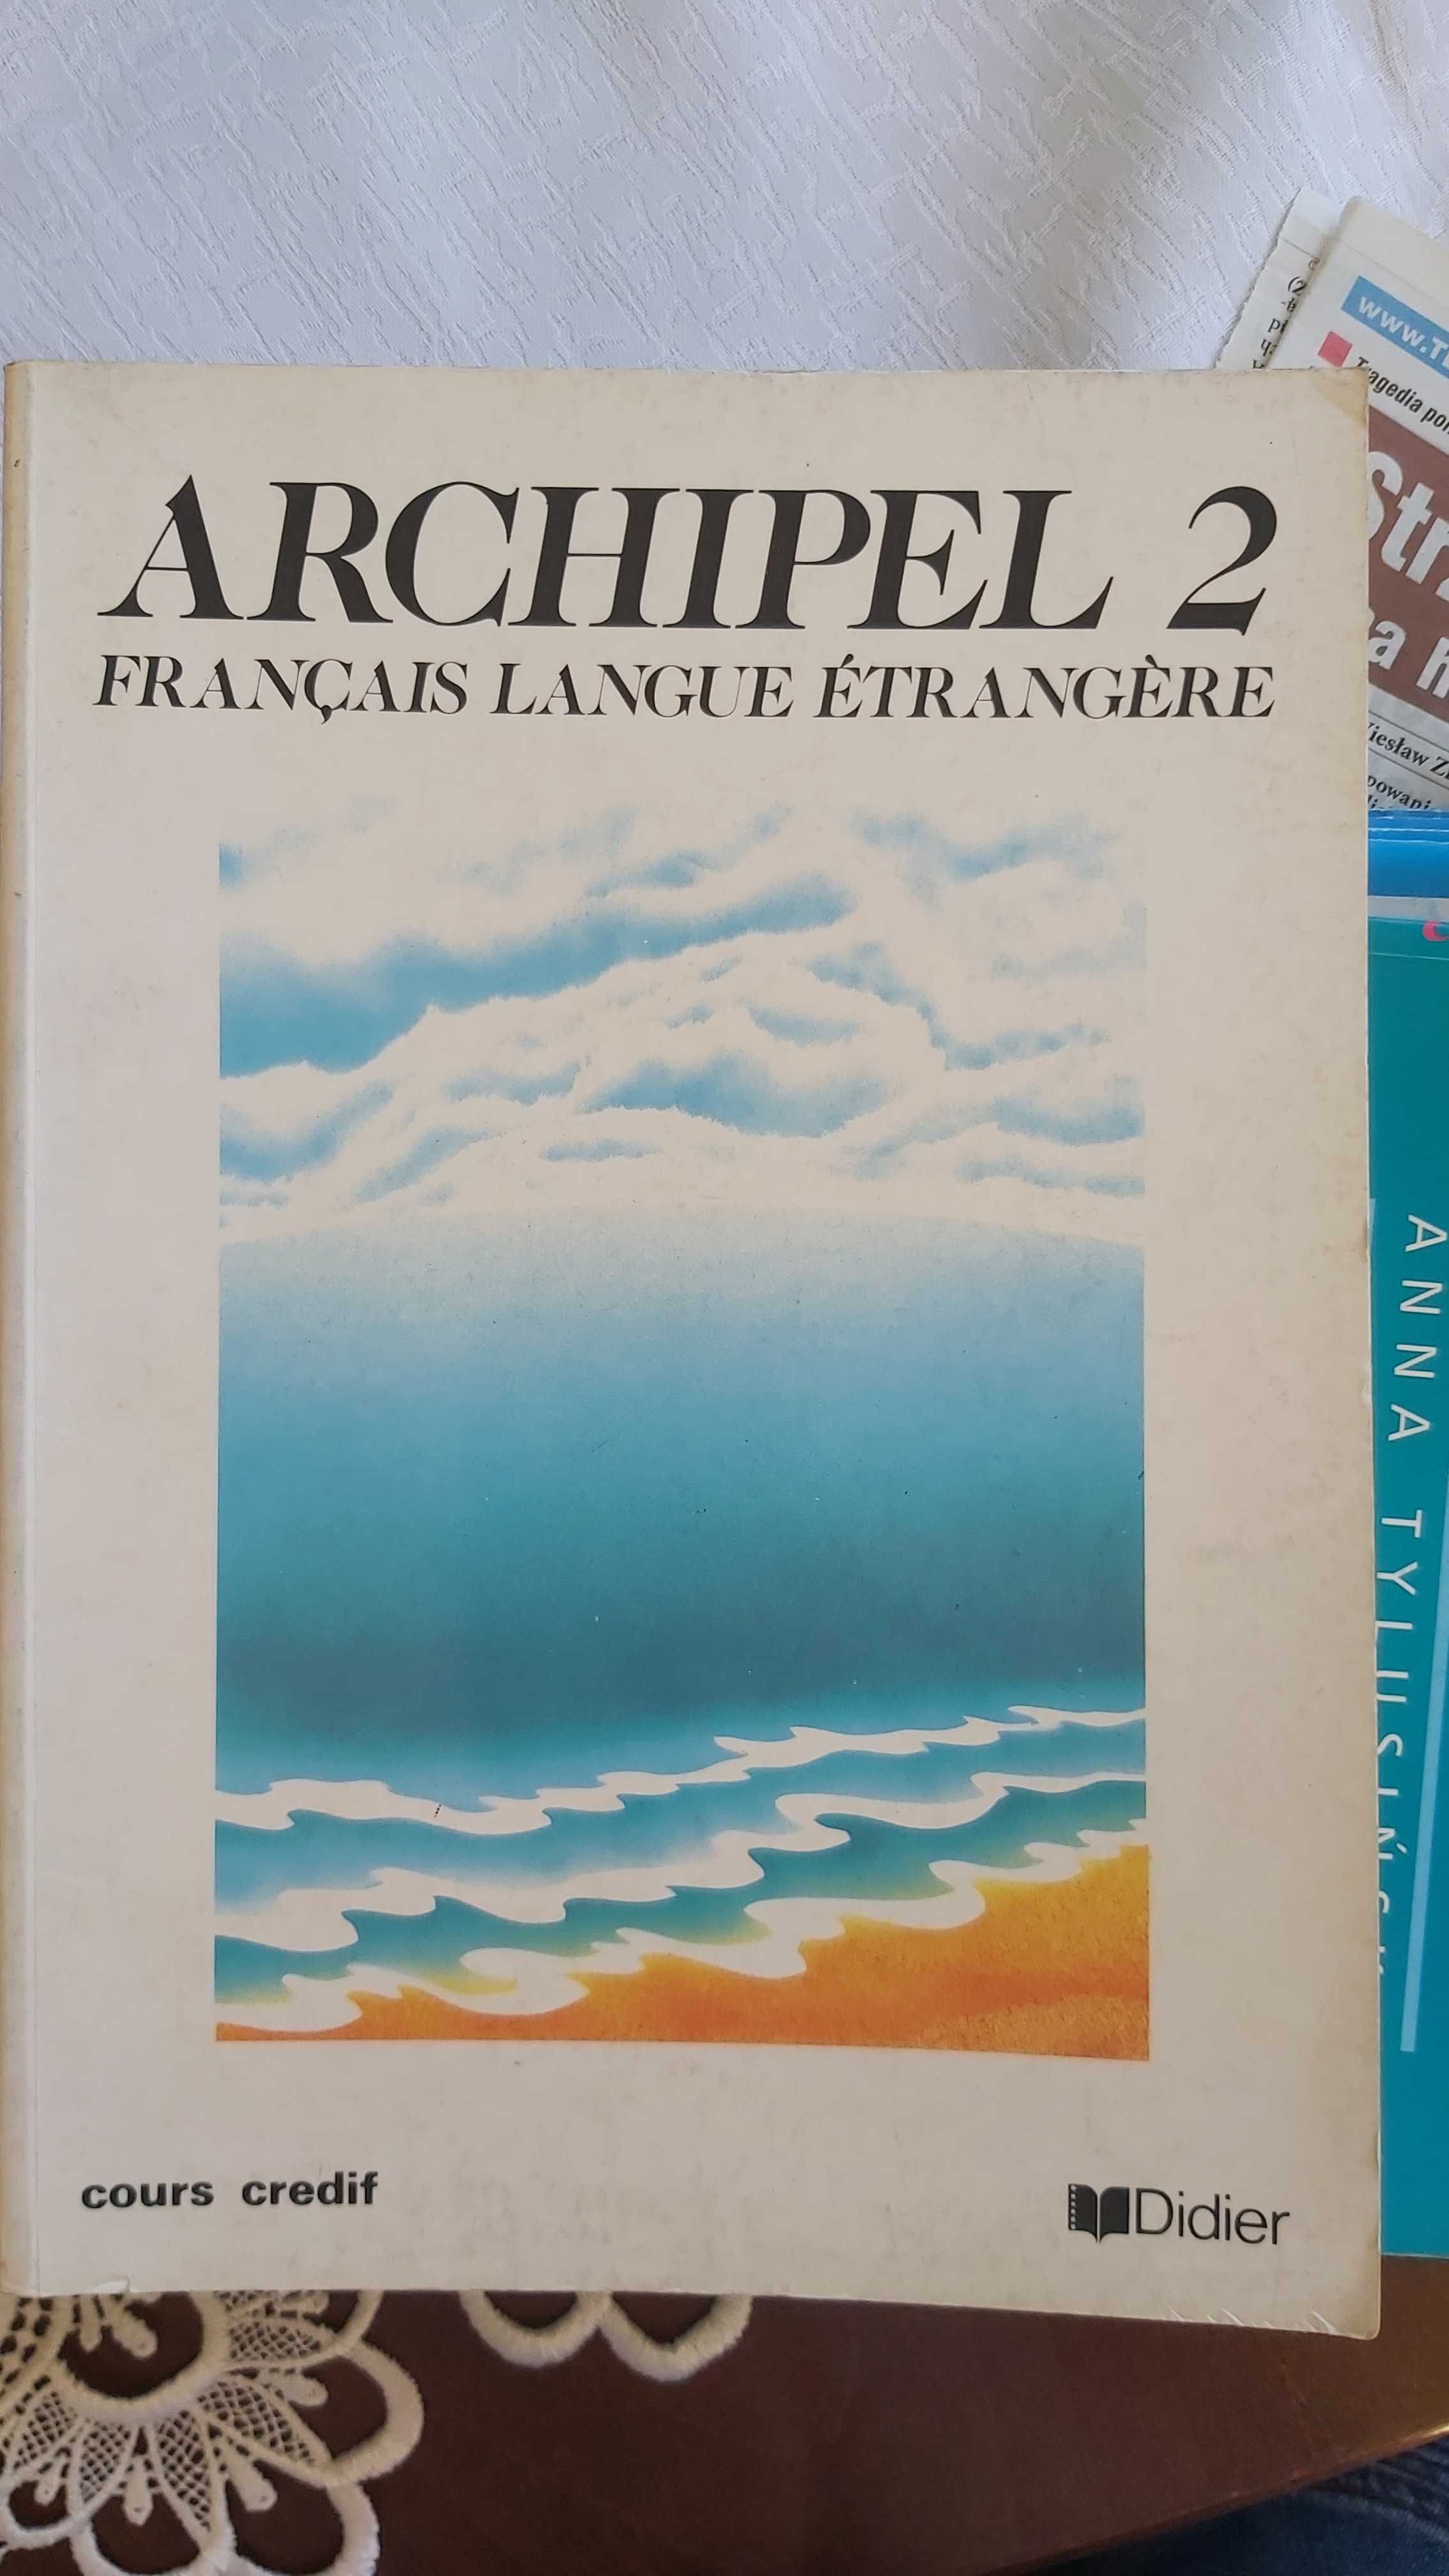 Archipel 2 francais langue etrangere